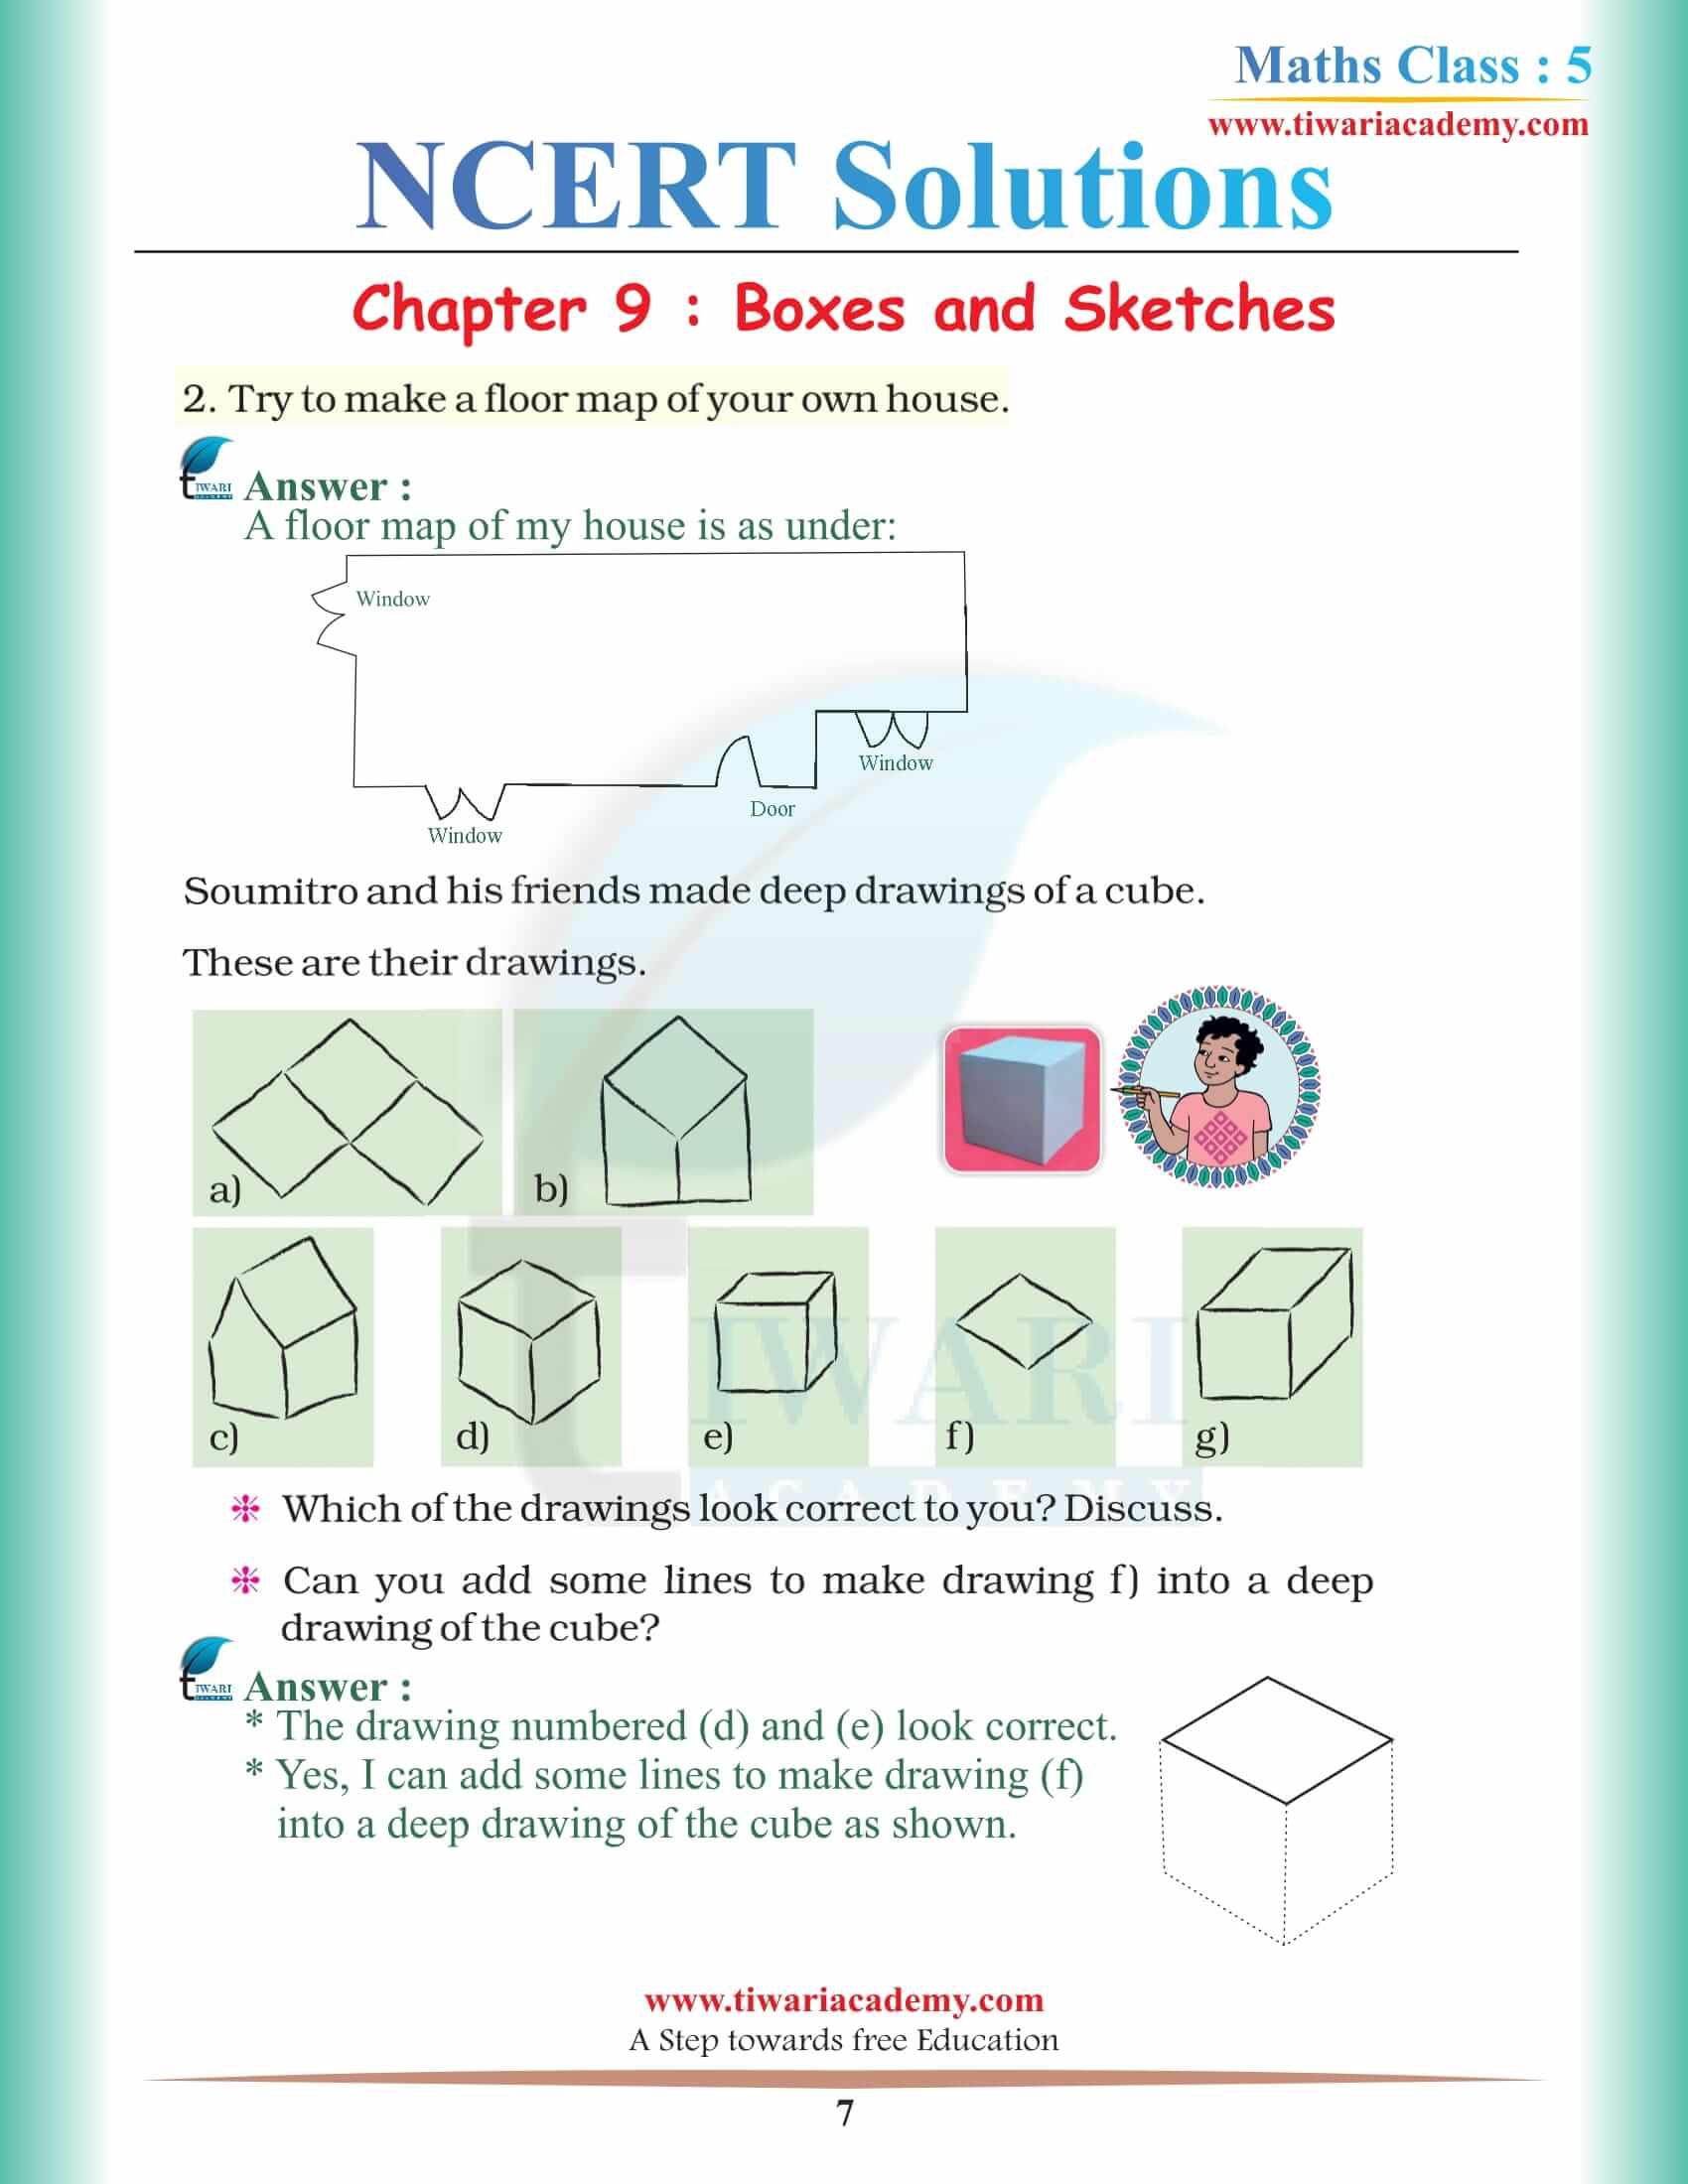 Class 5 Maths NCERT Chapter 9 Solutions